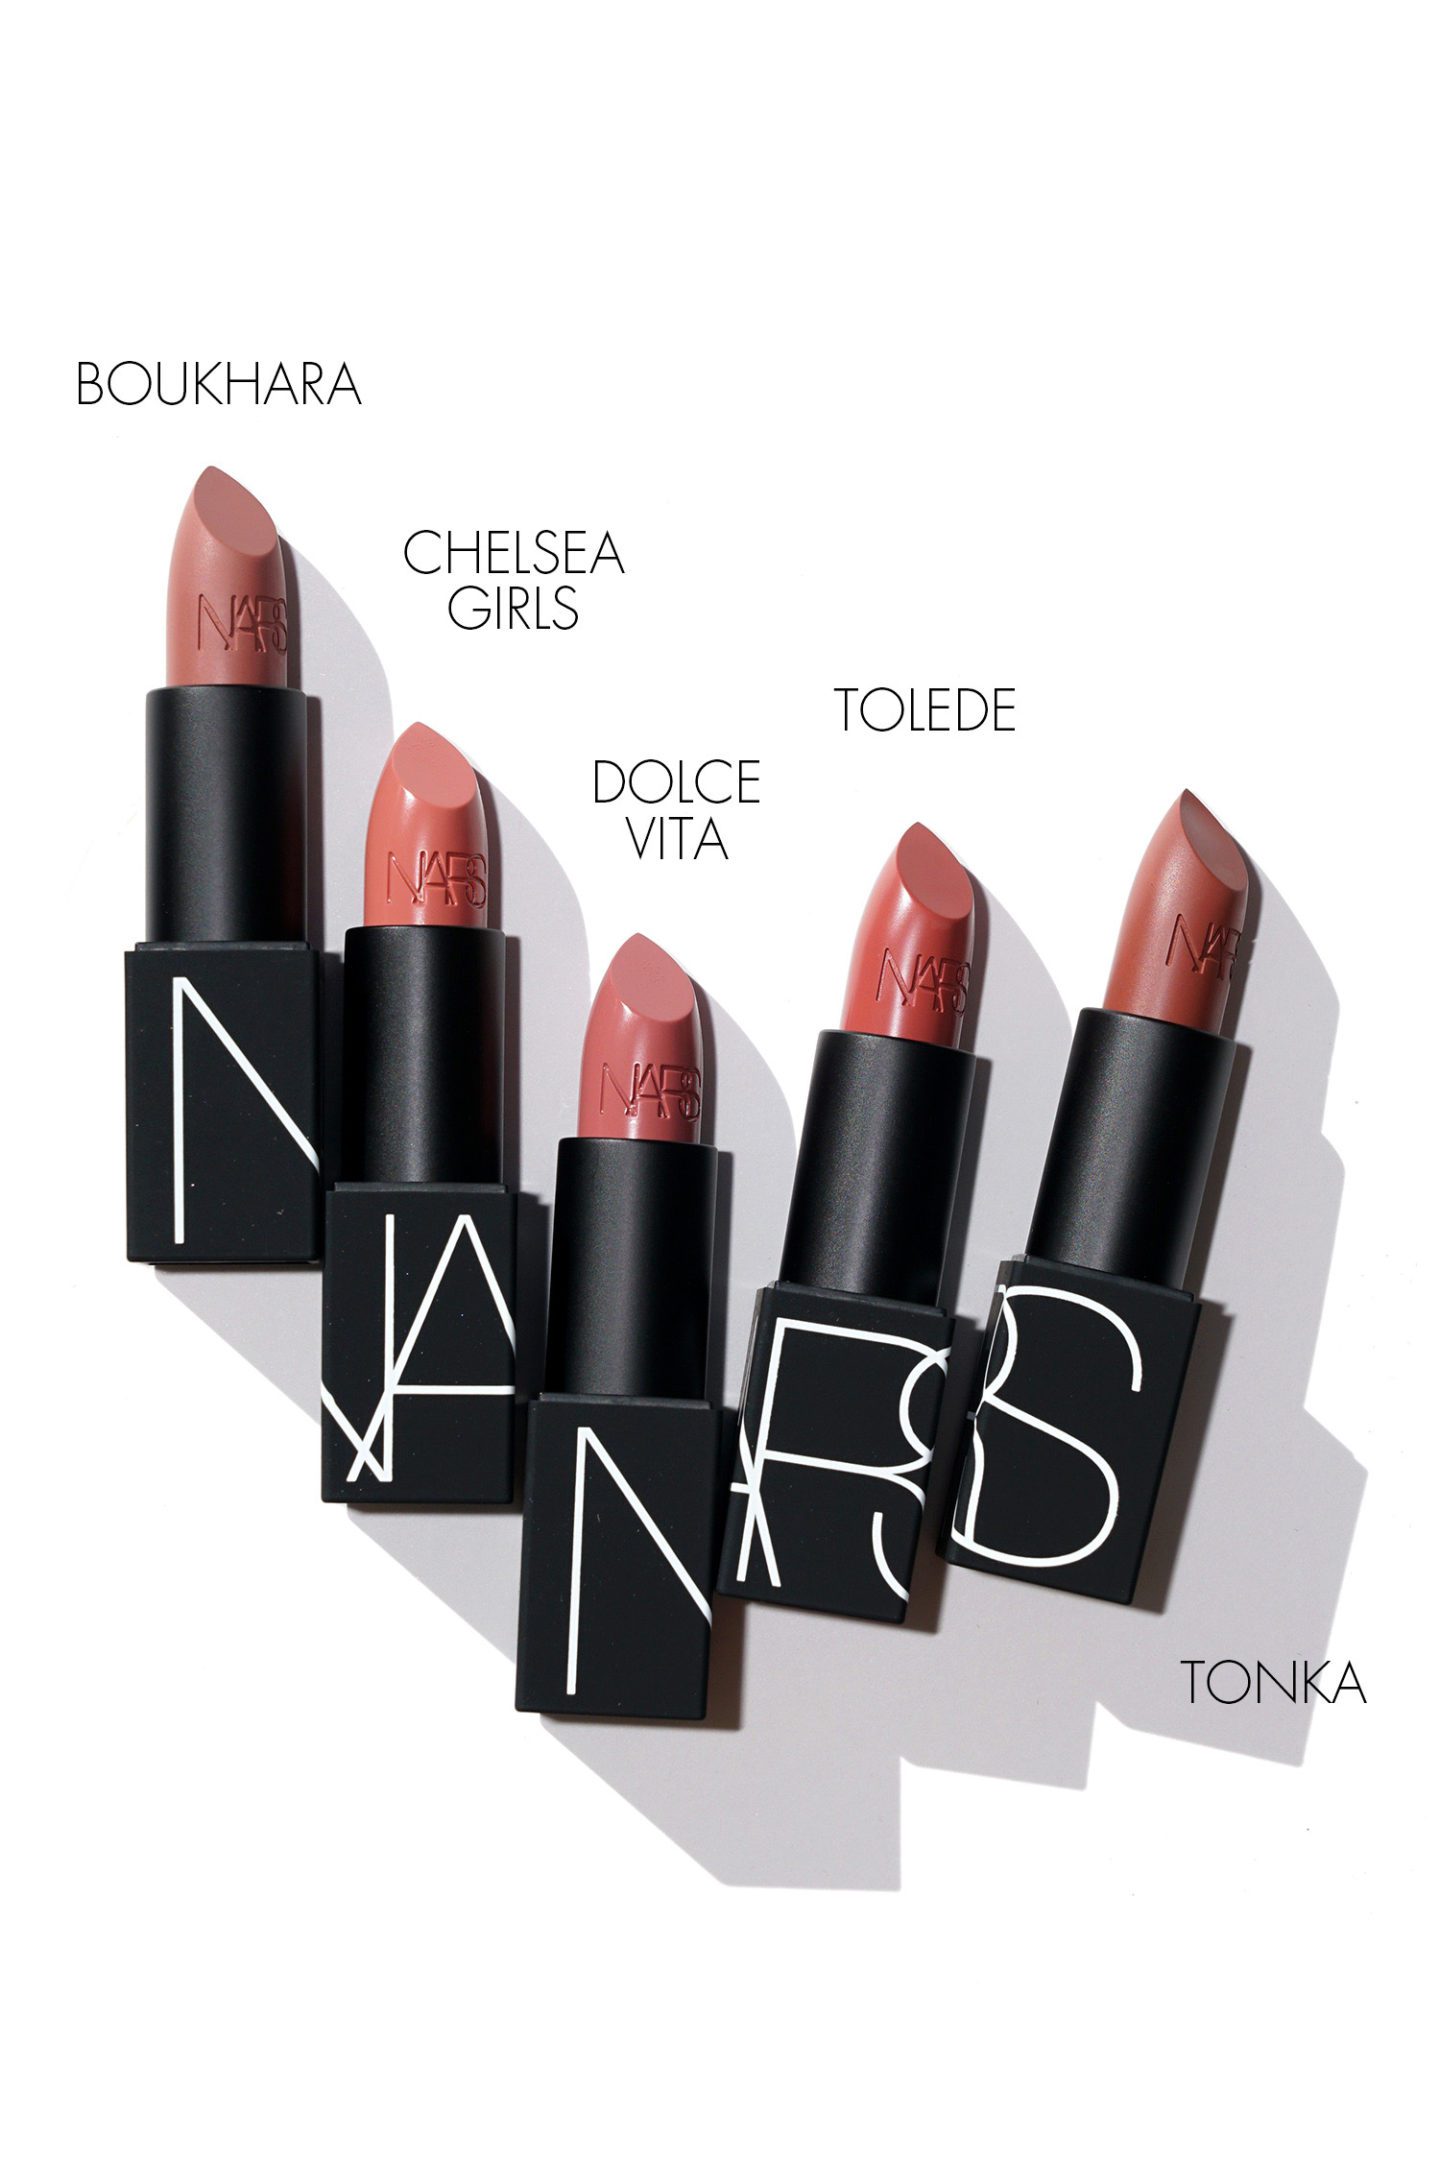 NARS Lipstick Boukhara, Chelsea Girls, Dolce Vita, Tolede, Tonka